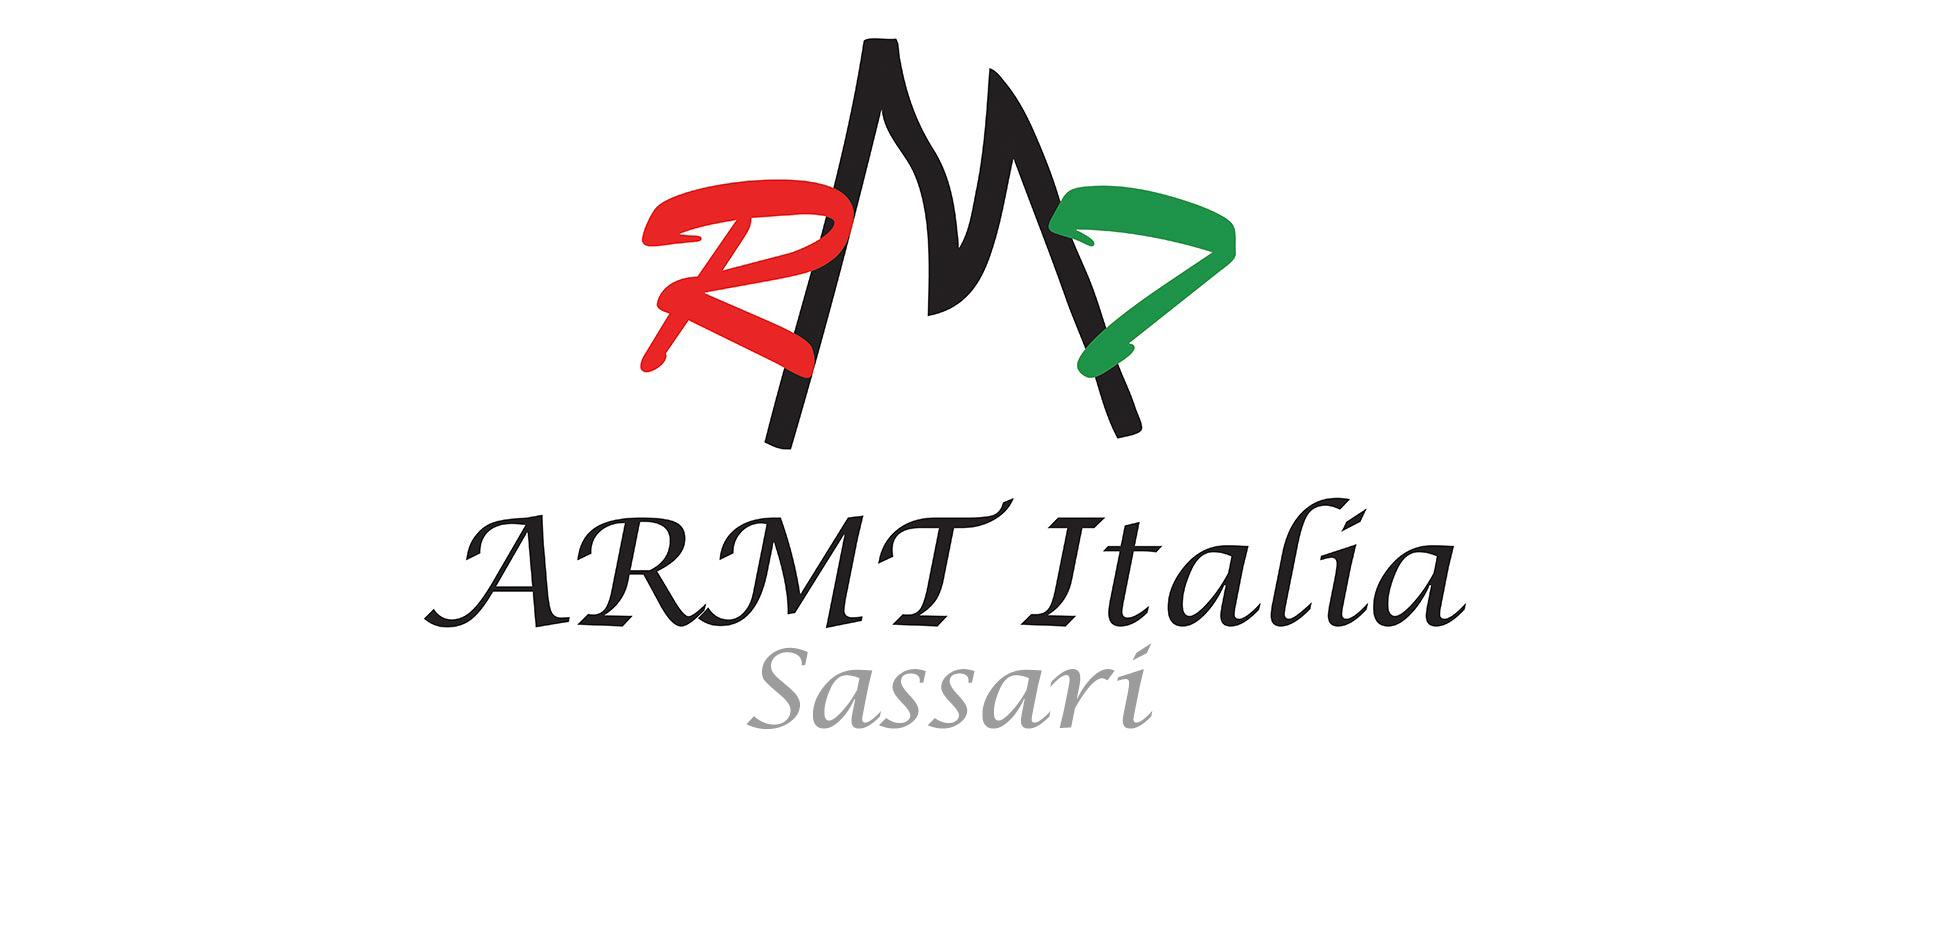 ARMT Italia (Sassari)